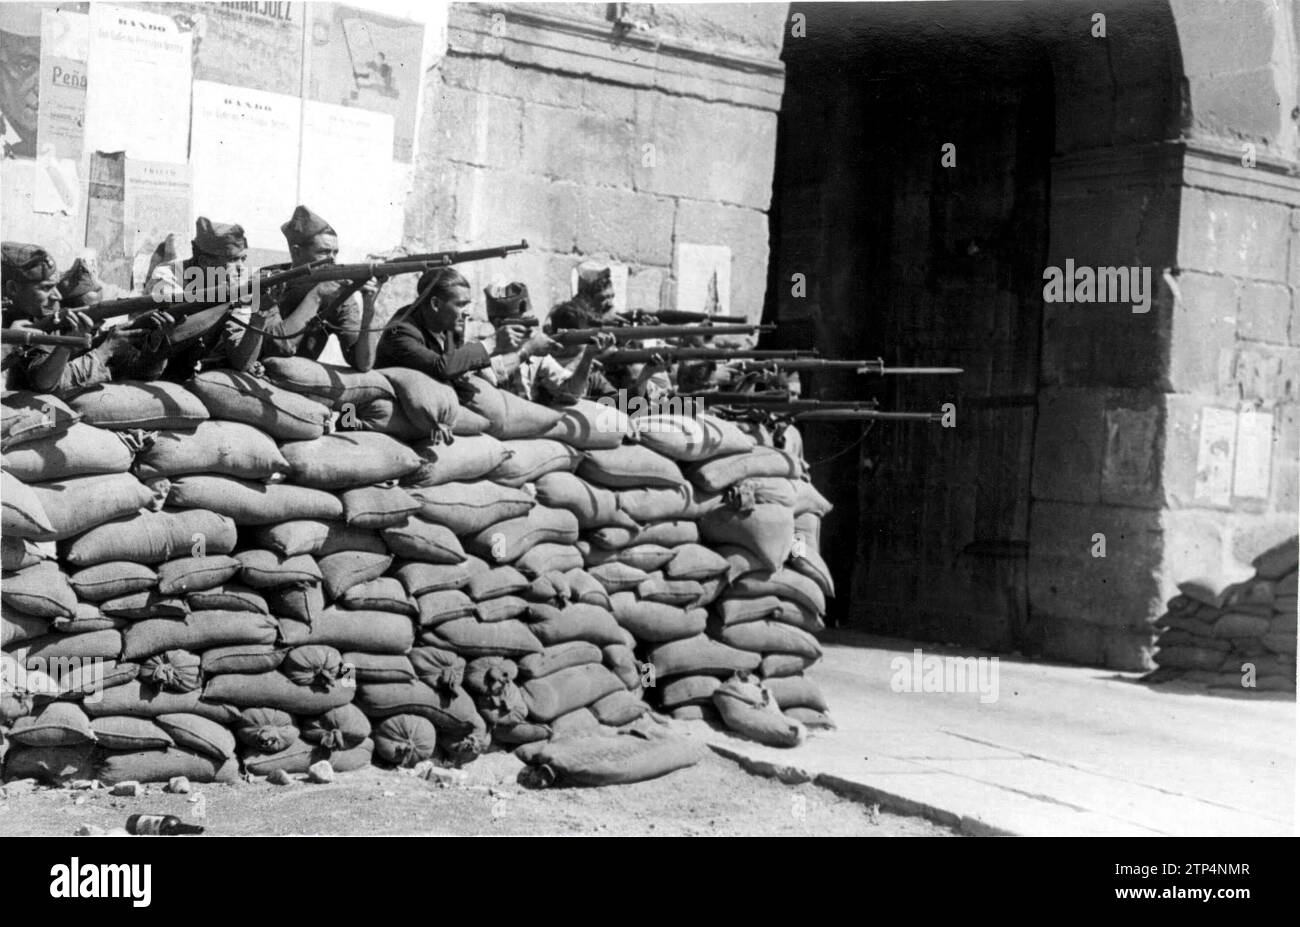 08/31/1936. Die Stadt wurde von den Milizen verteidigt, nachdem sie von den Staatsangehörigen eingenommen worden war. Quelle: Album / Archivo ABC / Cervera Stockfoto